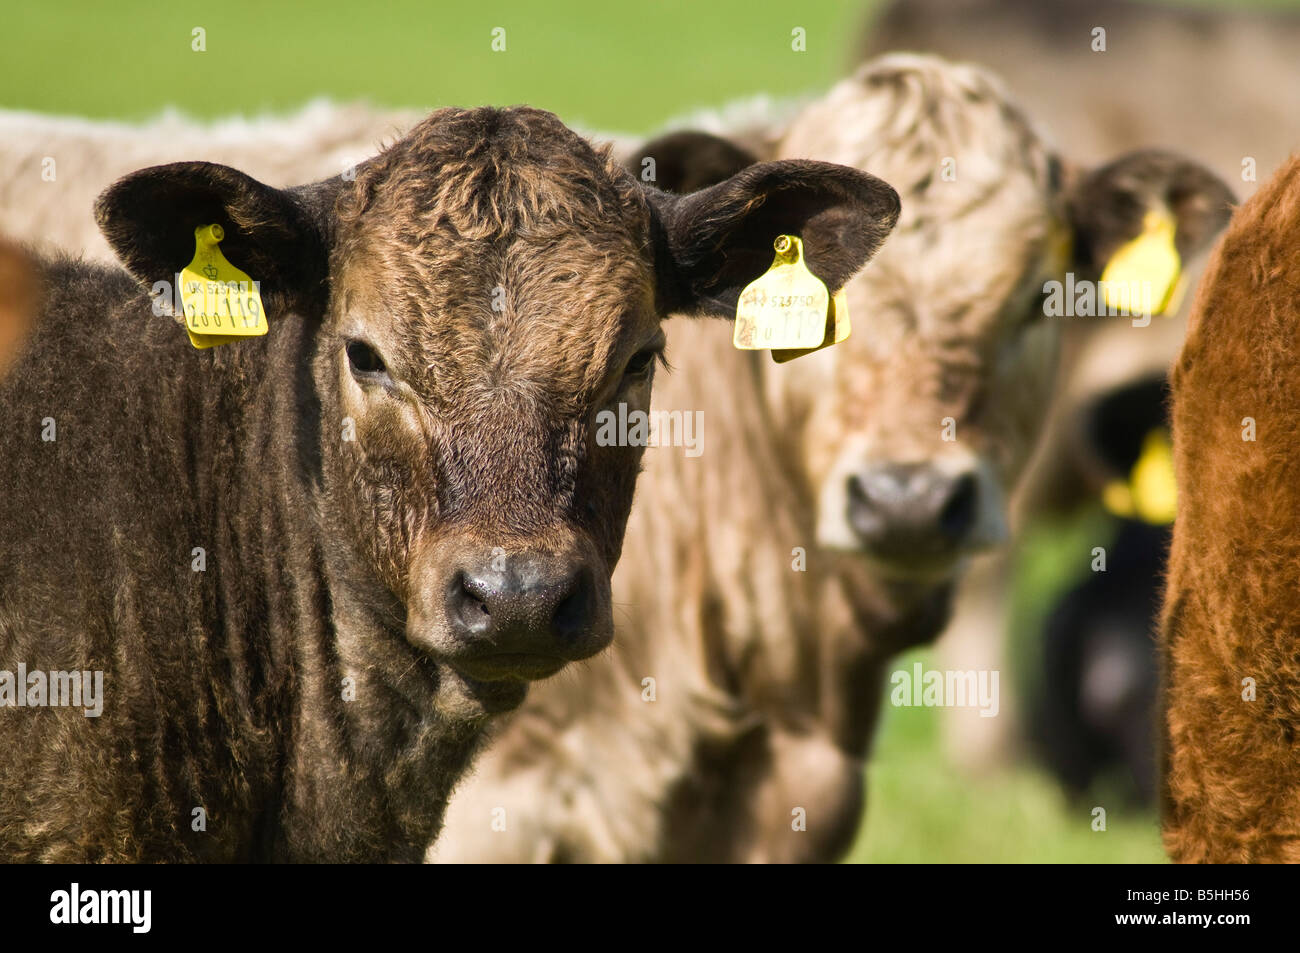 Dh Rindfleisch Kuh de Nahaufnahme jungen Rind Kälber mit Identität tags Rinder Ohrmarken Stockfoto